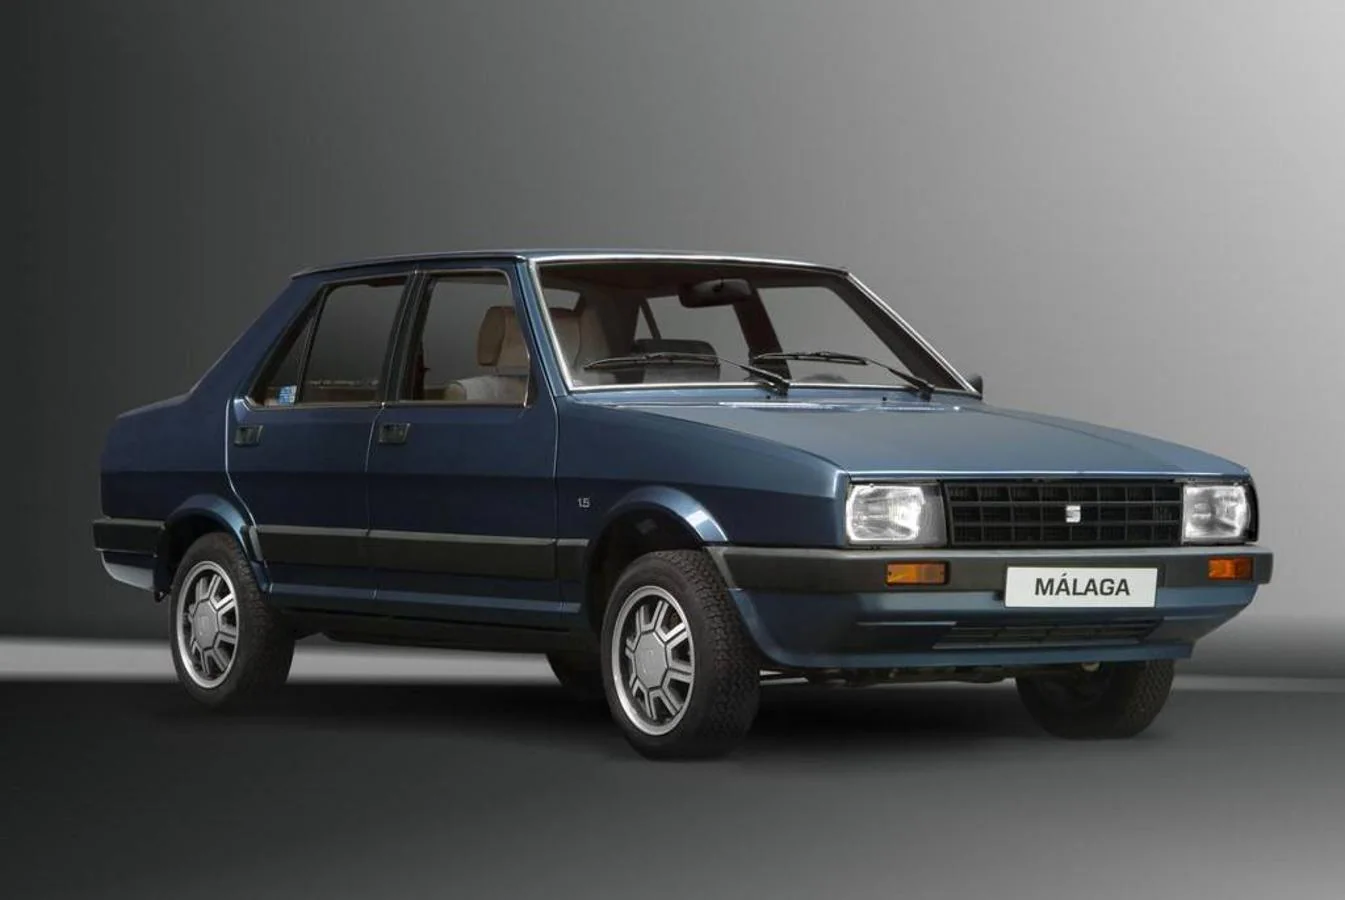 Entre 1985 y 1991 SEAT fabricó el Málaga, una versión con 4 puertas del Ibiza. Fueron 232.000 unidades, a un precio básico de 1.019.000 pesetas.